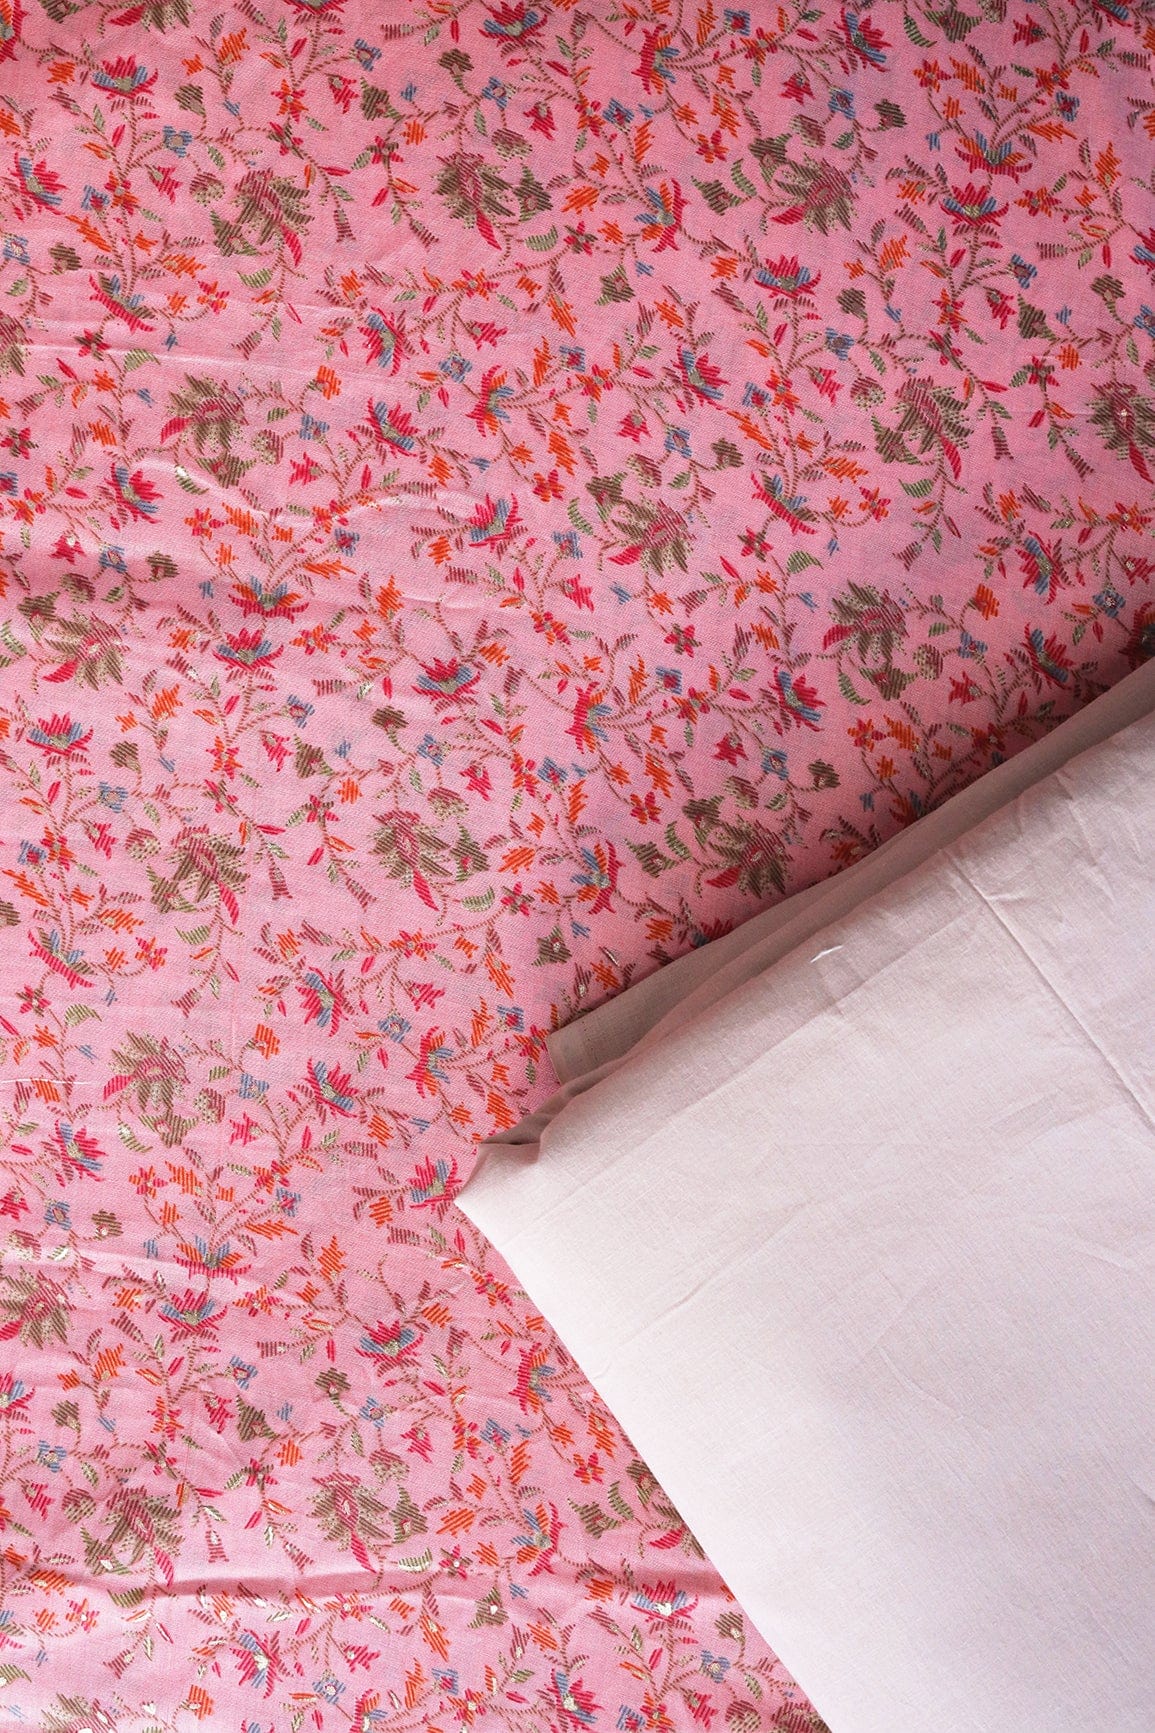 doeraa SUIT SETS Pink And Pale Mauve Pure Cotton Unstitched Suit Set (2 Piece)